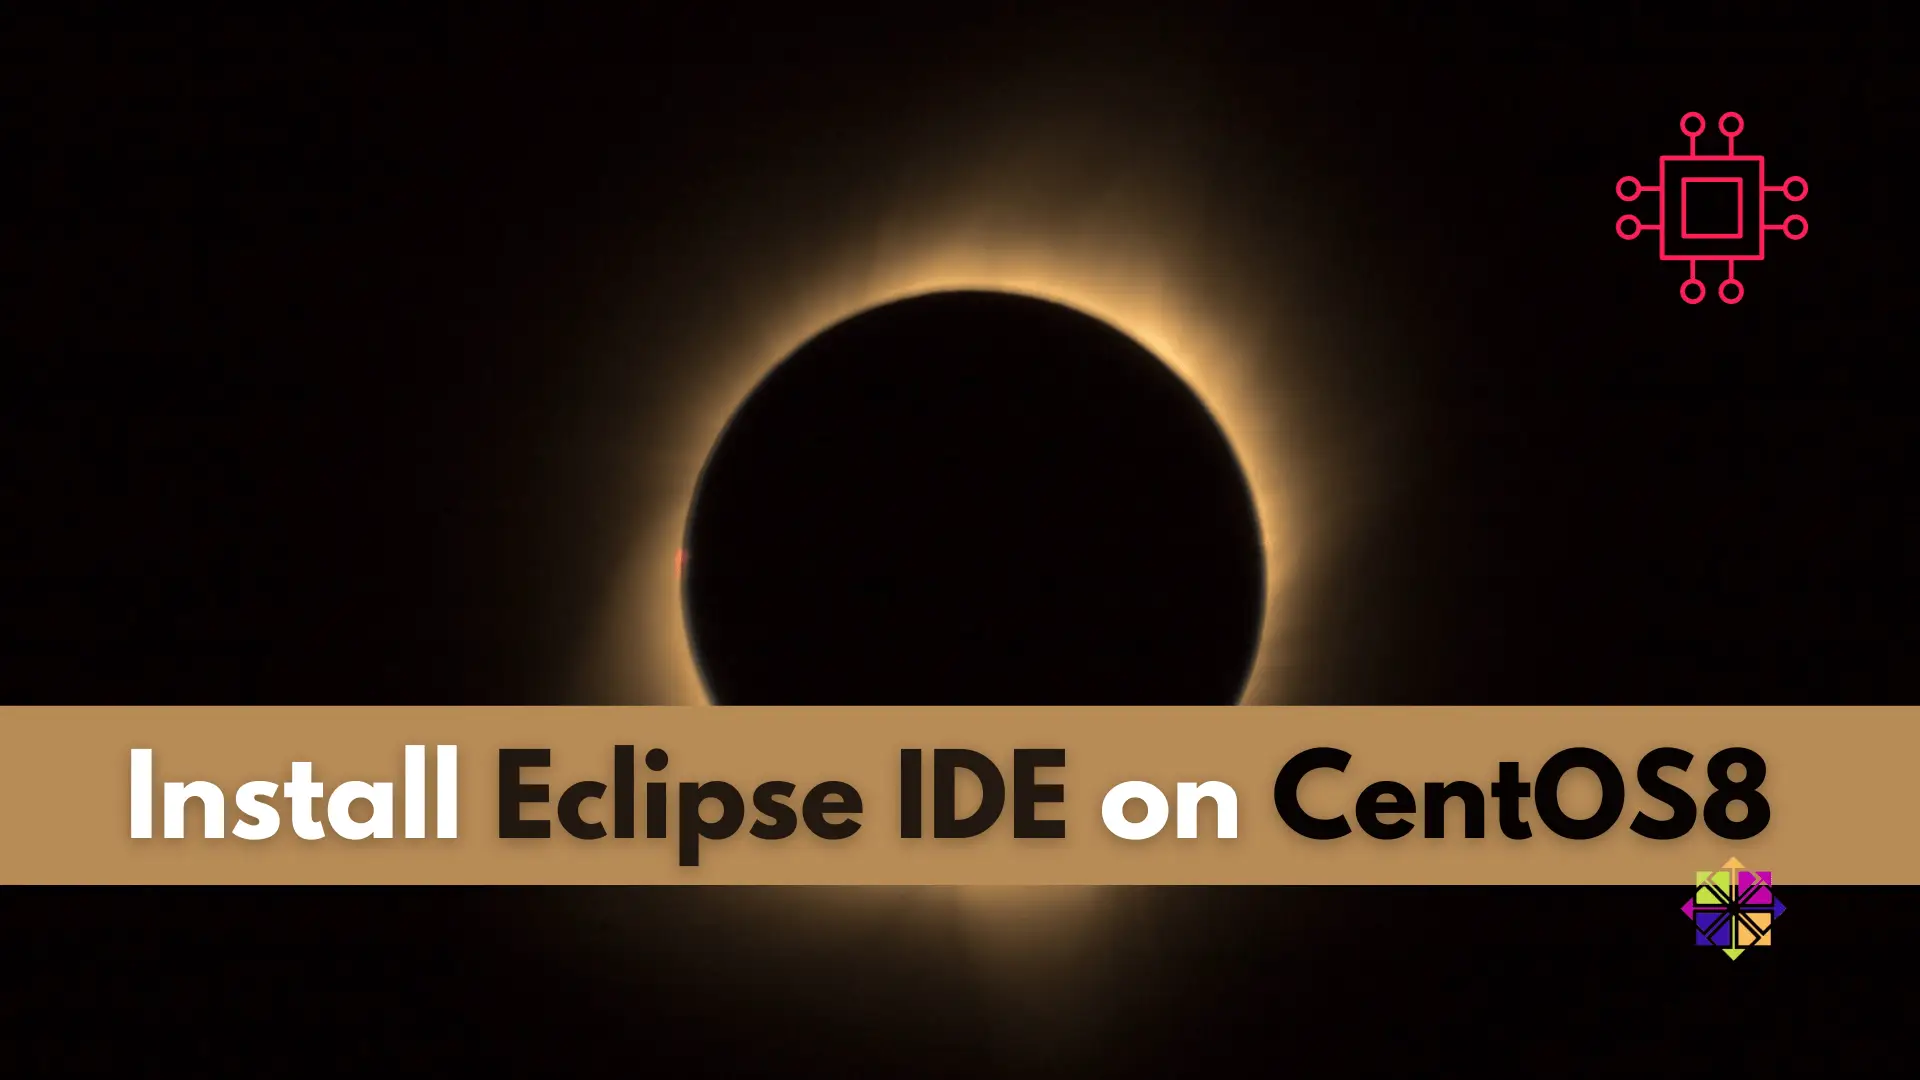 Eclipse IDE on CentOS 8